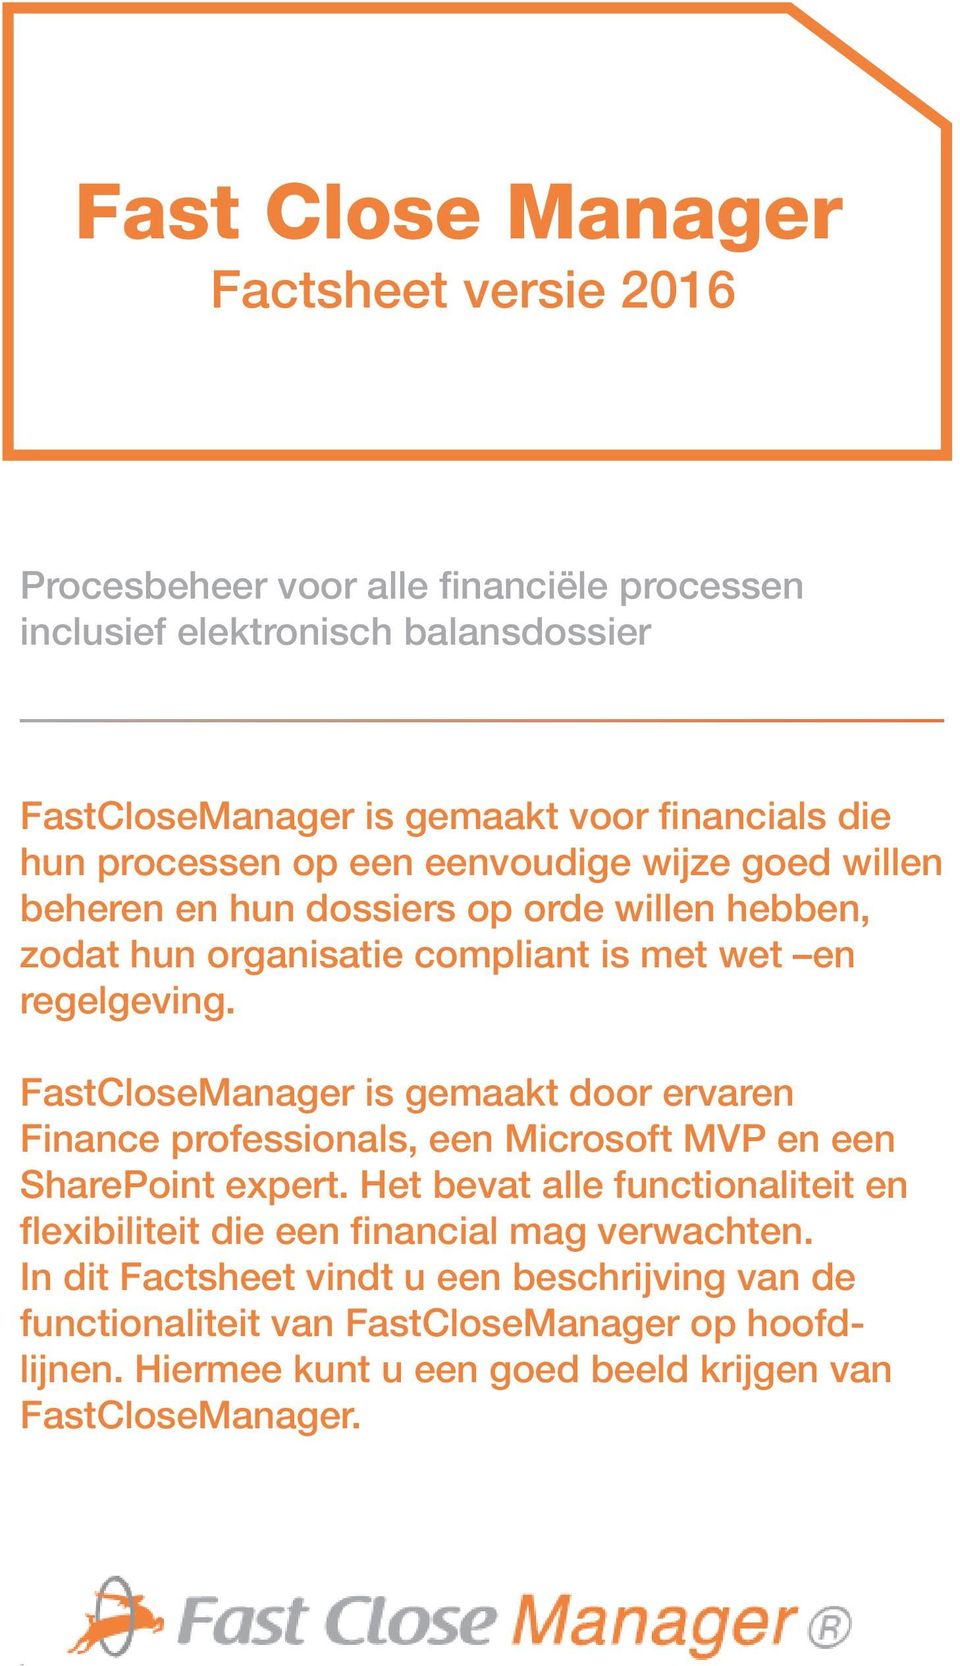 FastCloseManager is gemaakt door ervaren Finance professionals, een Microsoft MVP en een SharePoint expert.